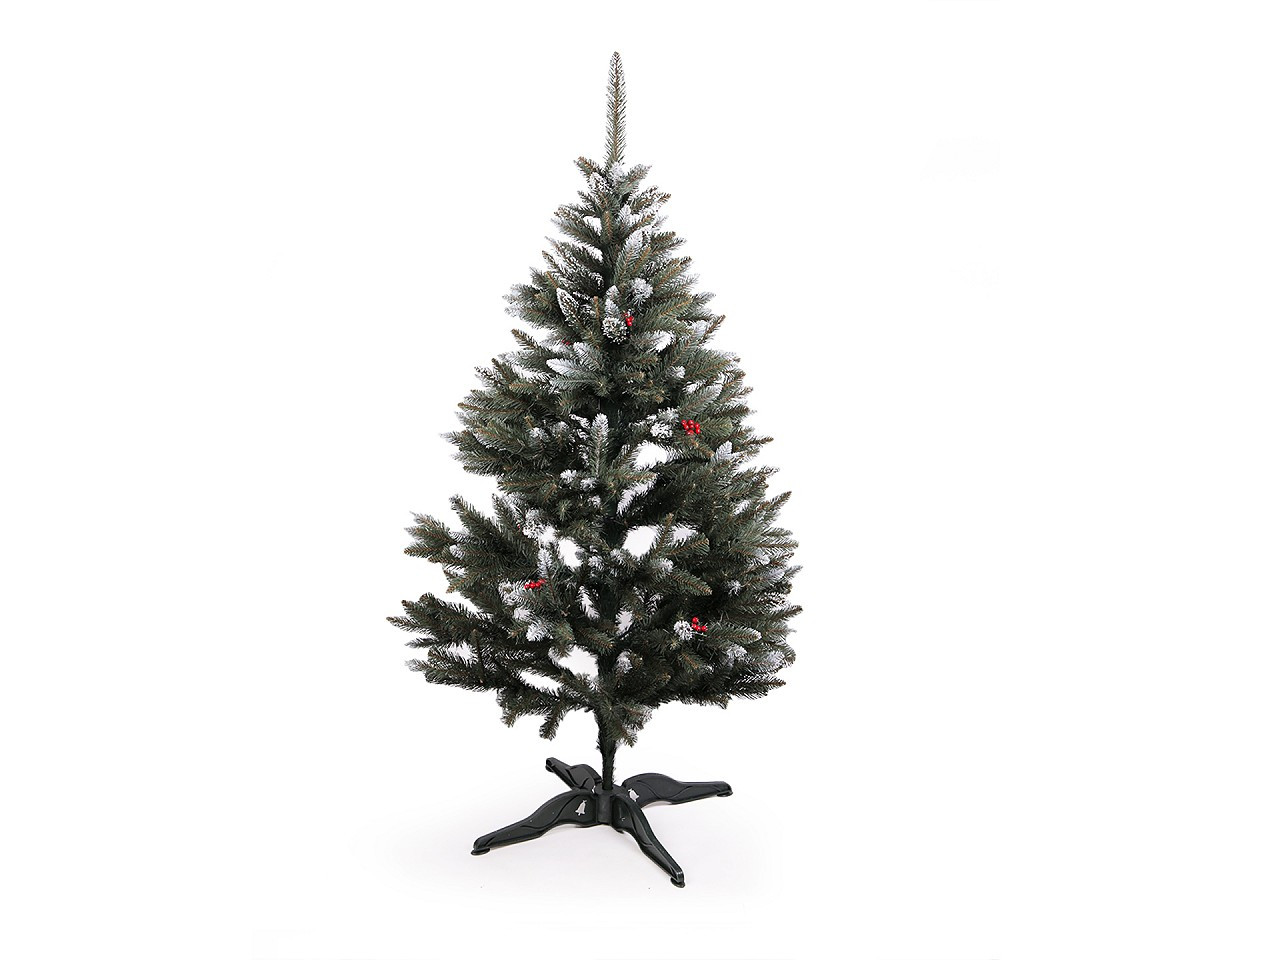 Umělý vánoční stromeček 180 cm - přírodní, zasněžený, 2D, barva 4 zelená bobule